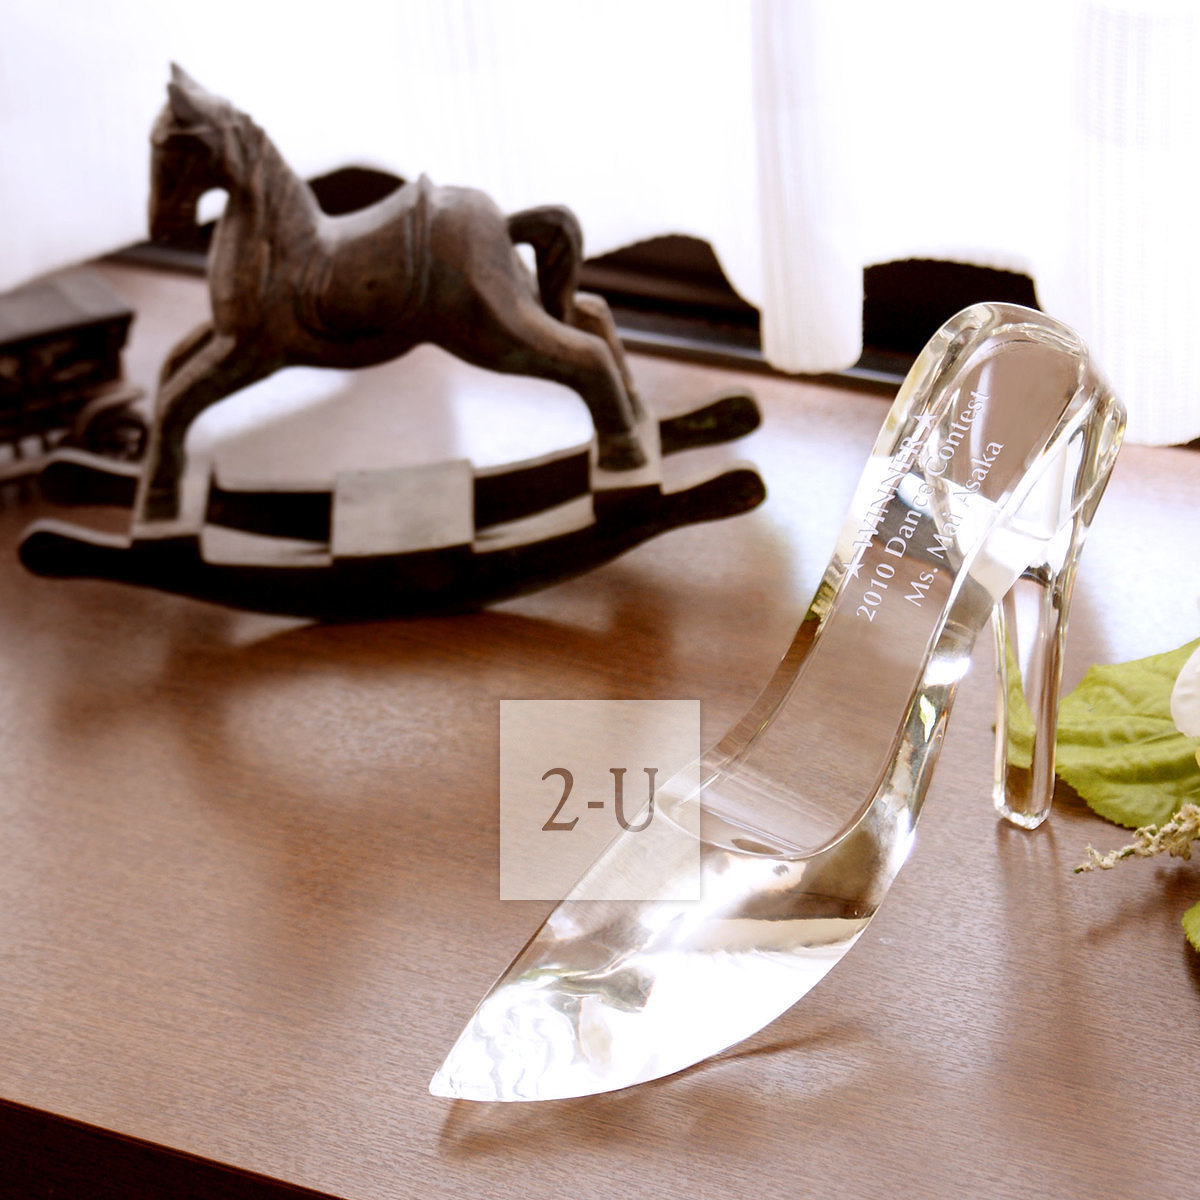 水晶镶嵌尖头高跟鞋|Allure|Cinderella系列|JIMMYCHOO